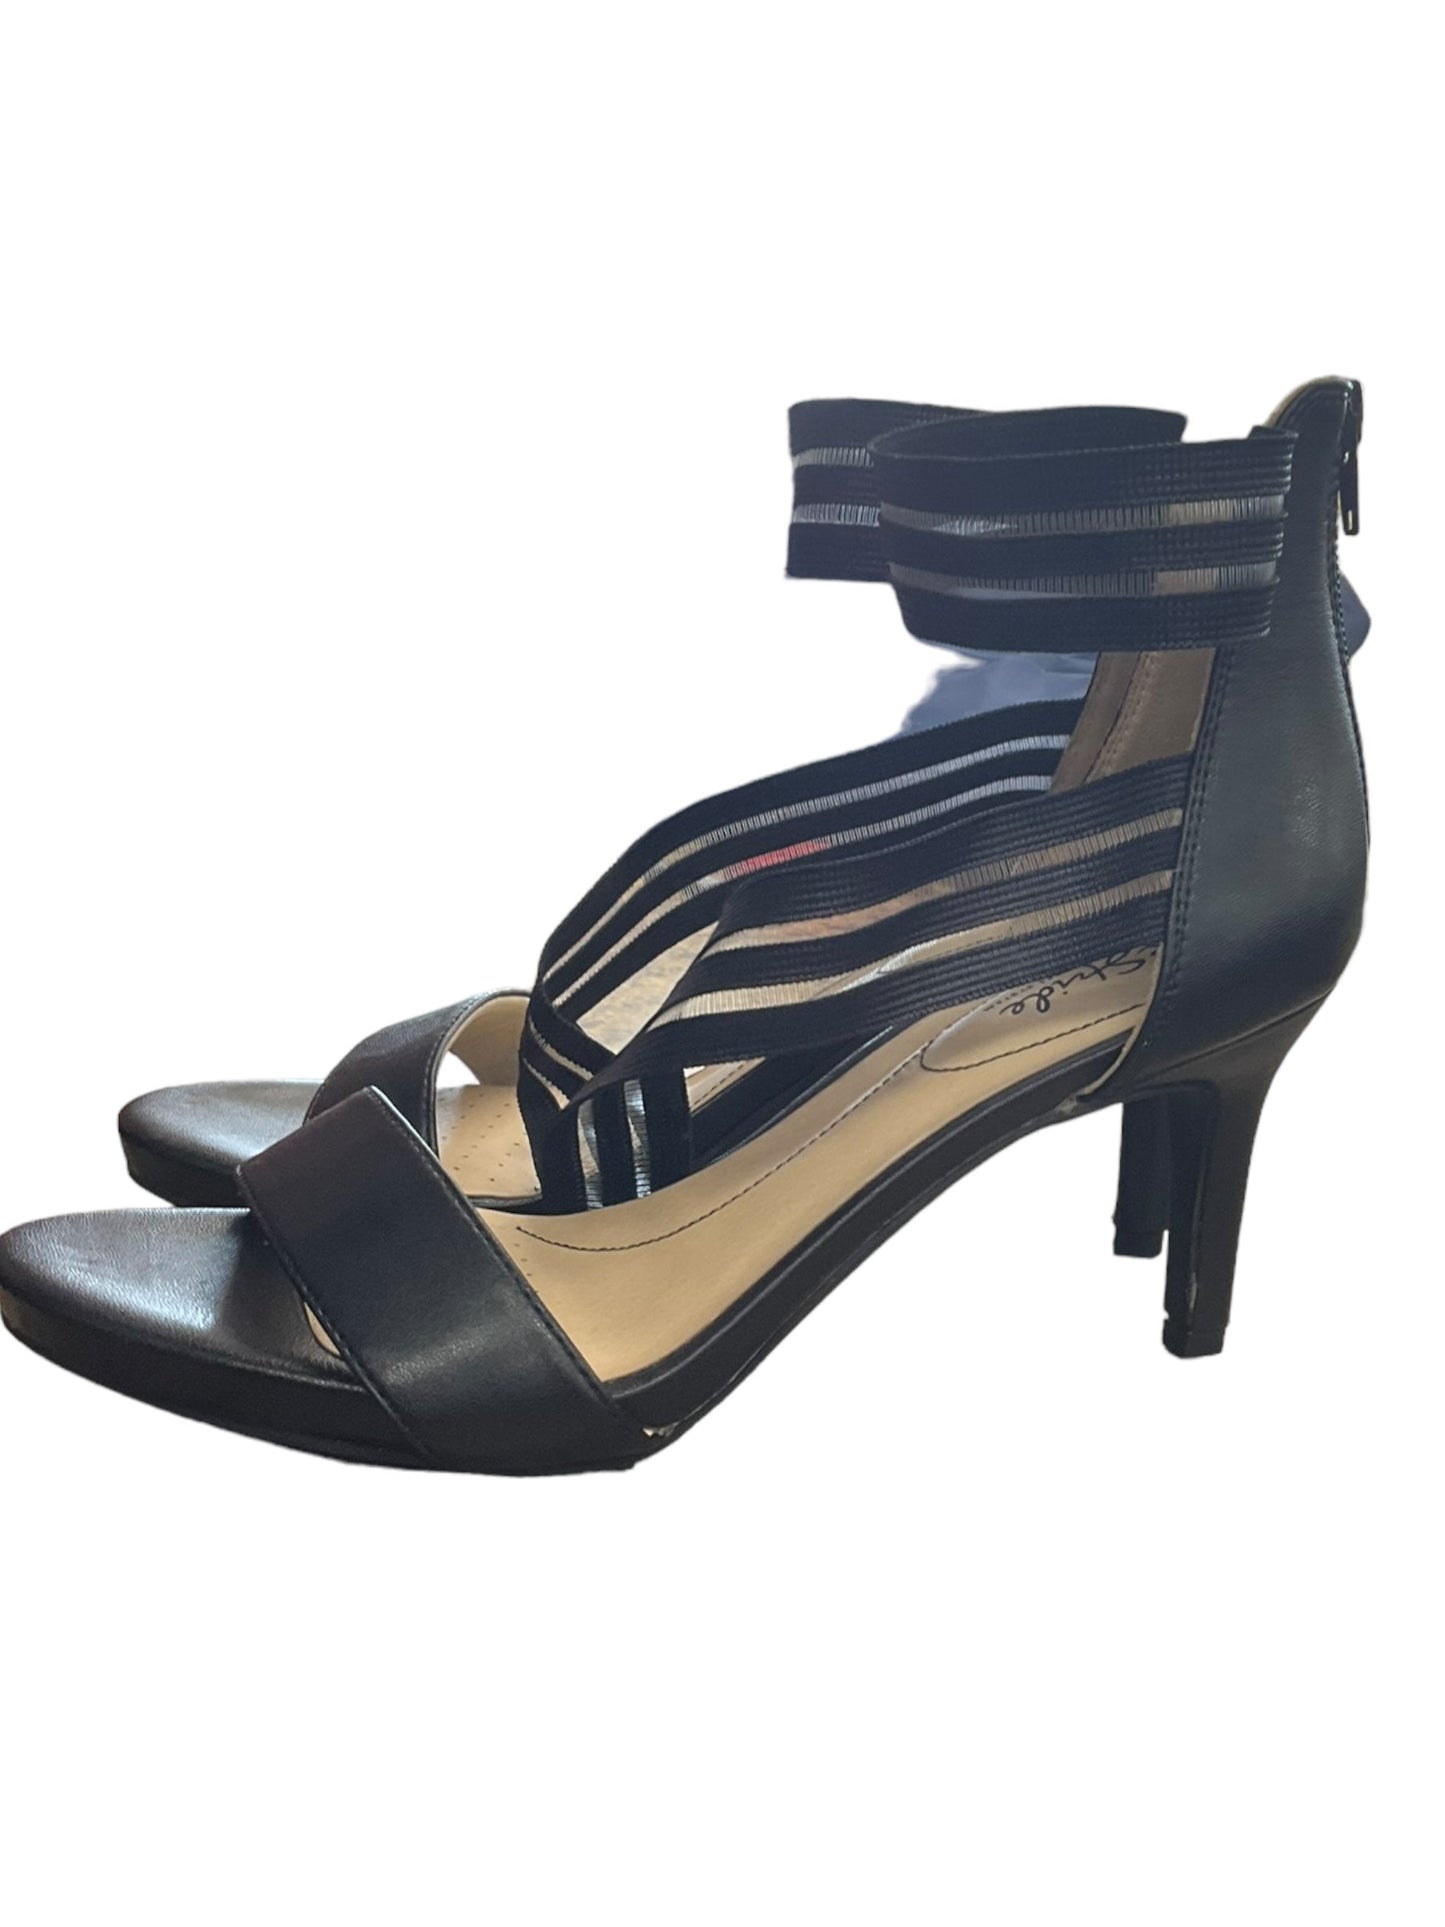 Black Sandals Heels Stiletto Life Stride, Size 9